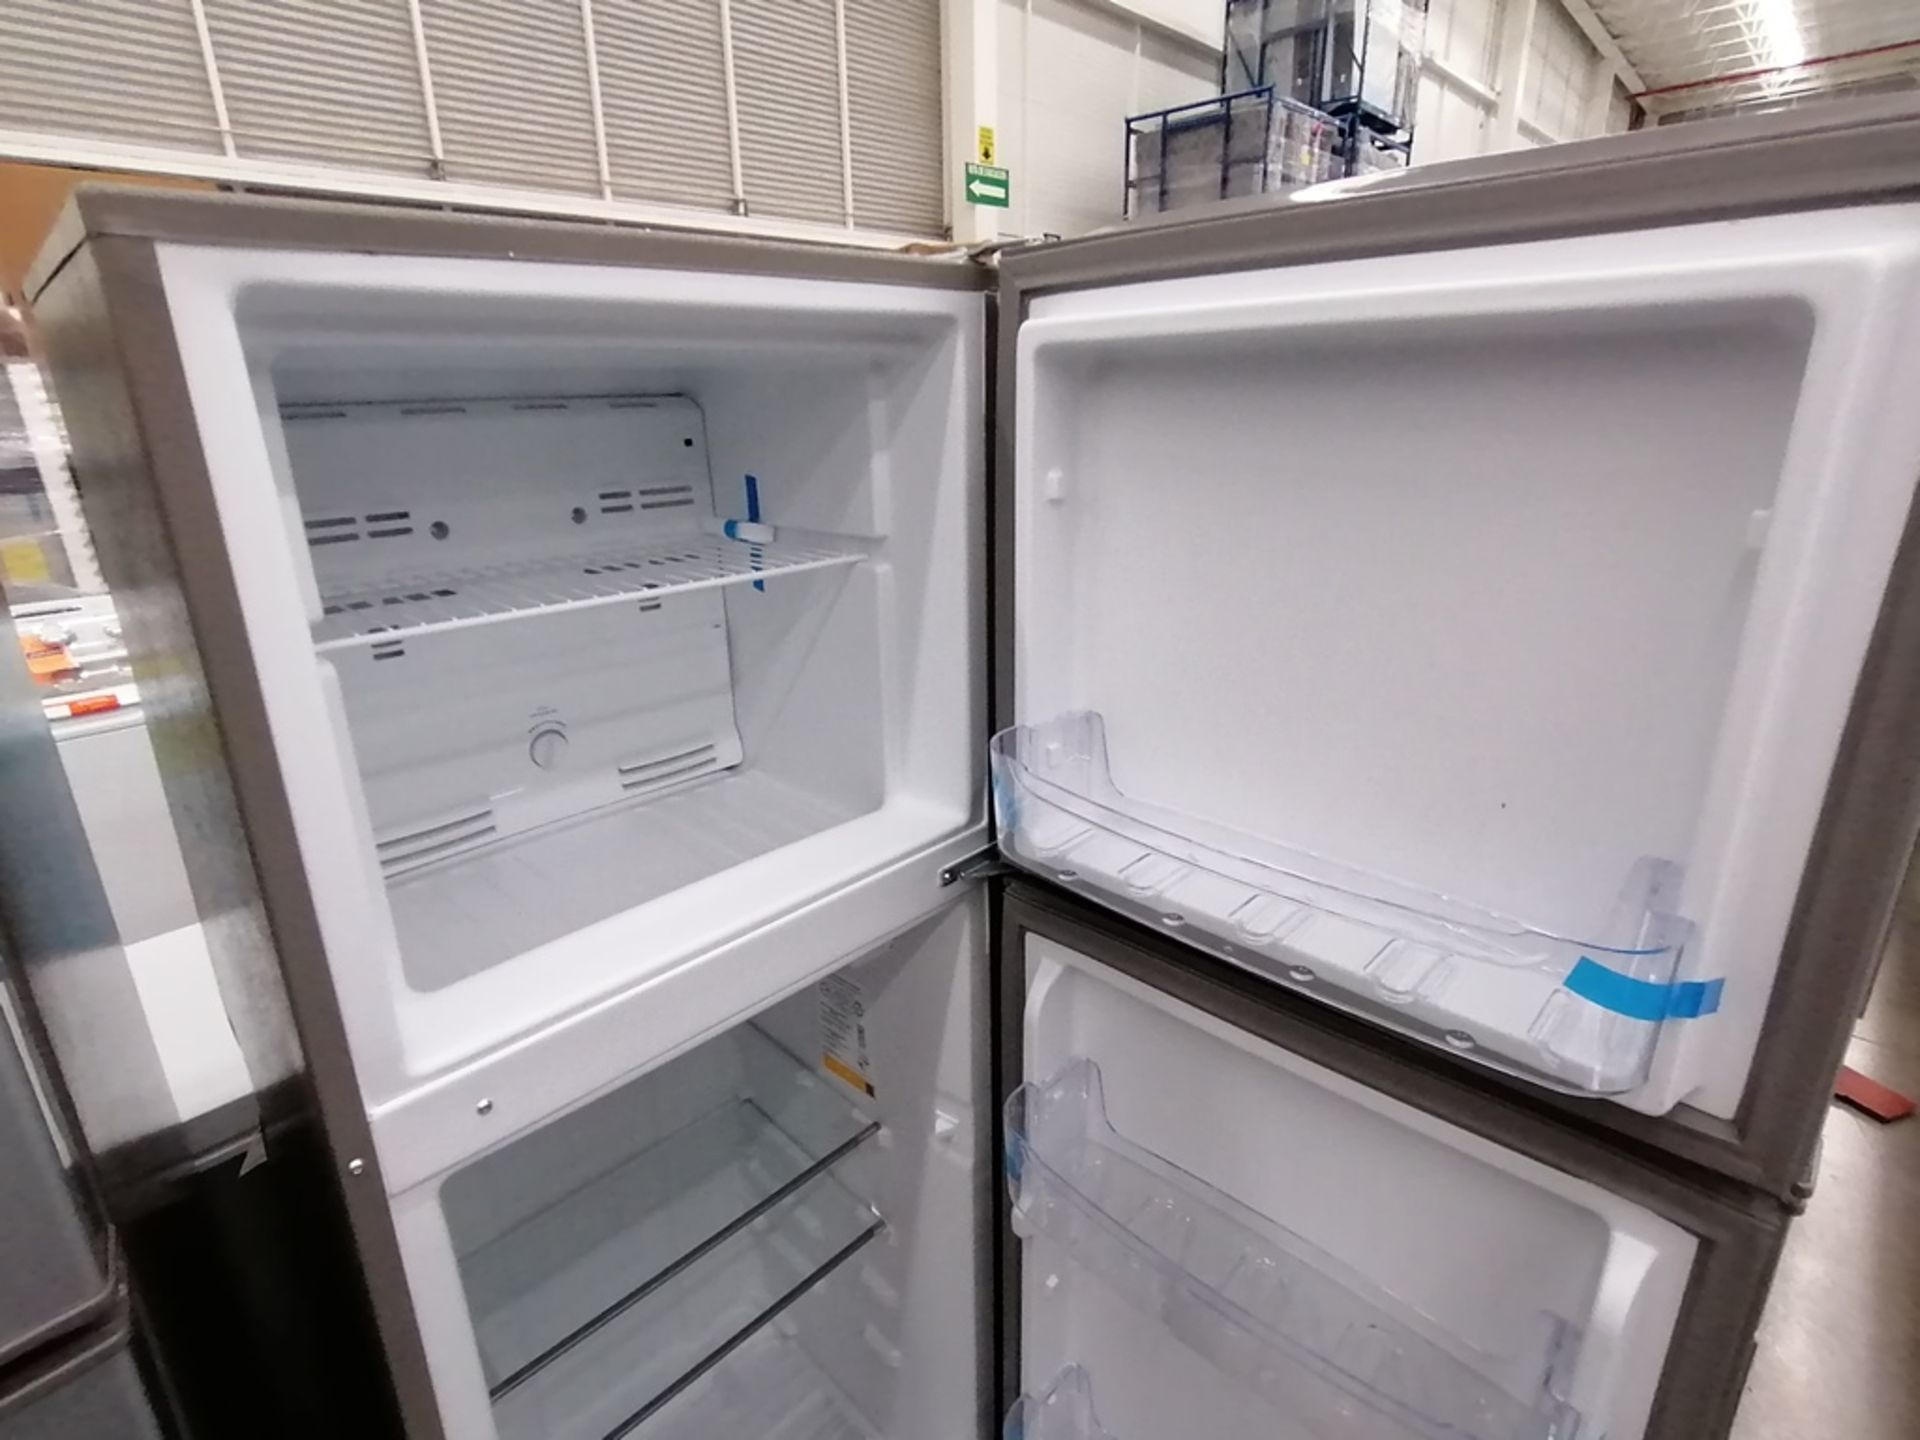 Lote de 2 refrigeradores incluye: 1 Refrigerador, Marca Acros, Modelo AT9007G, Serie VRA4332547, Co - Image 12 of 14